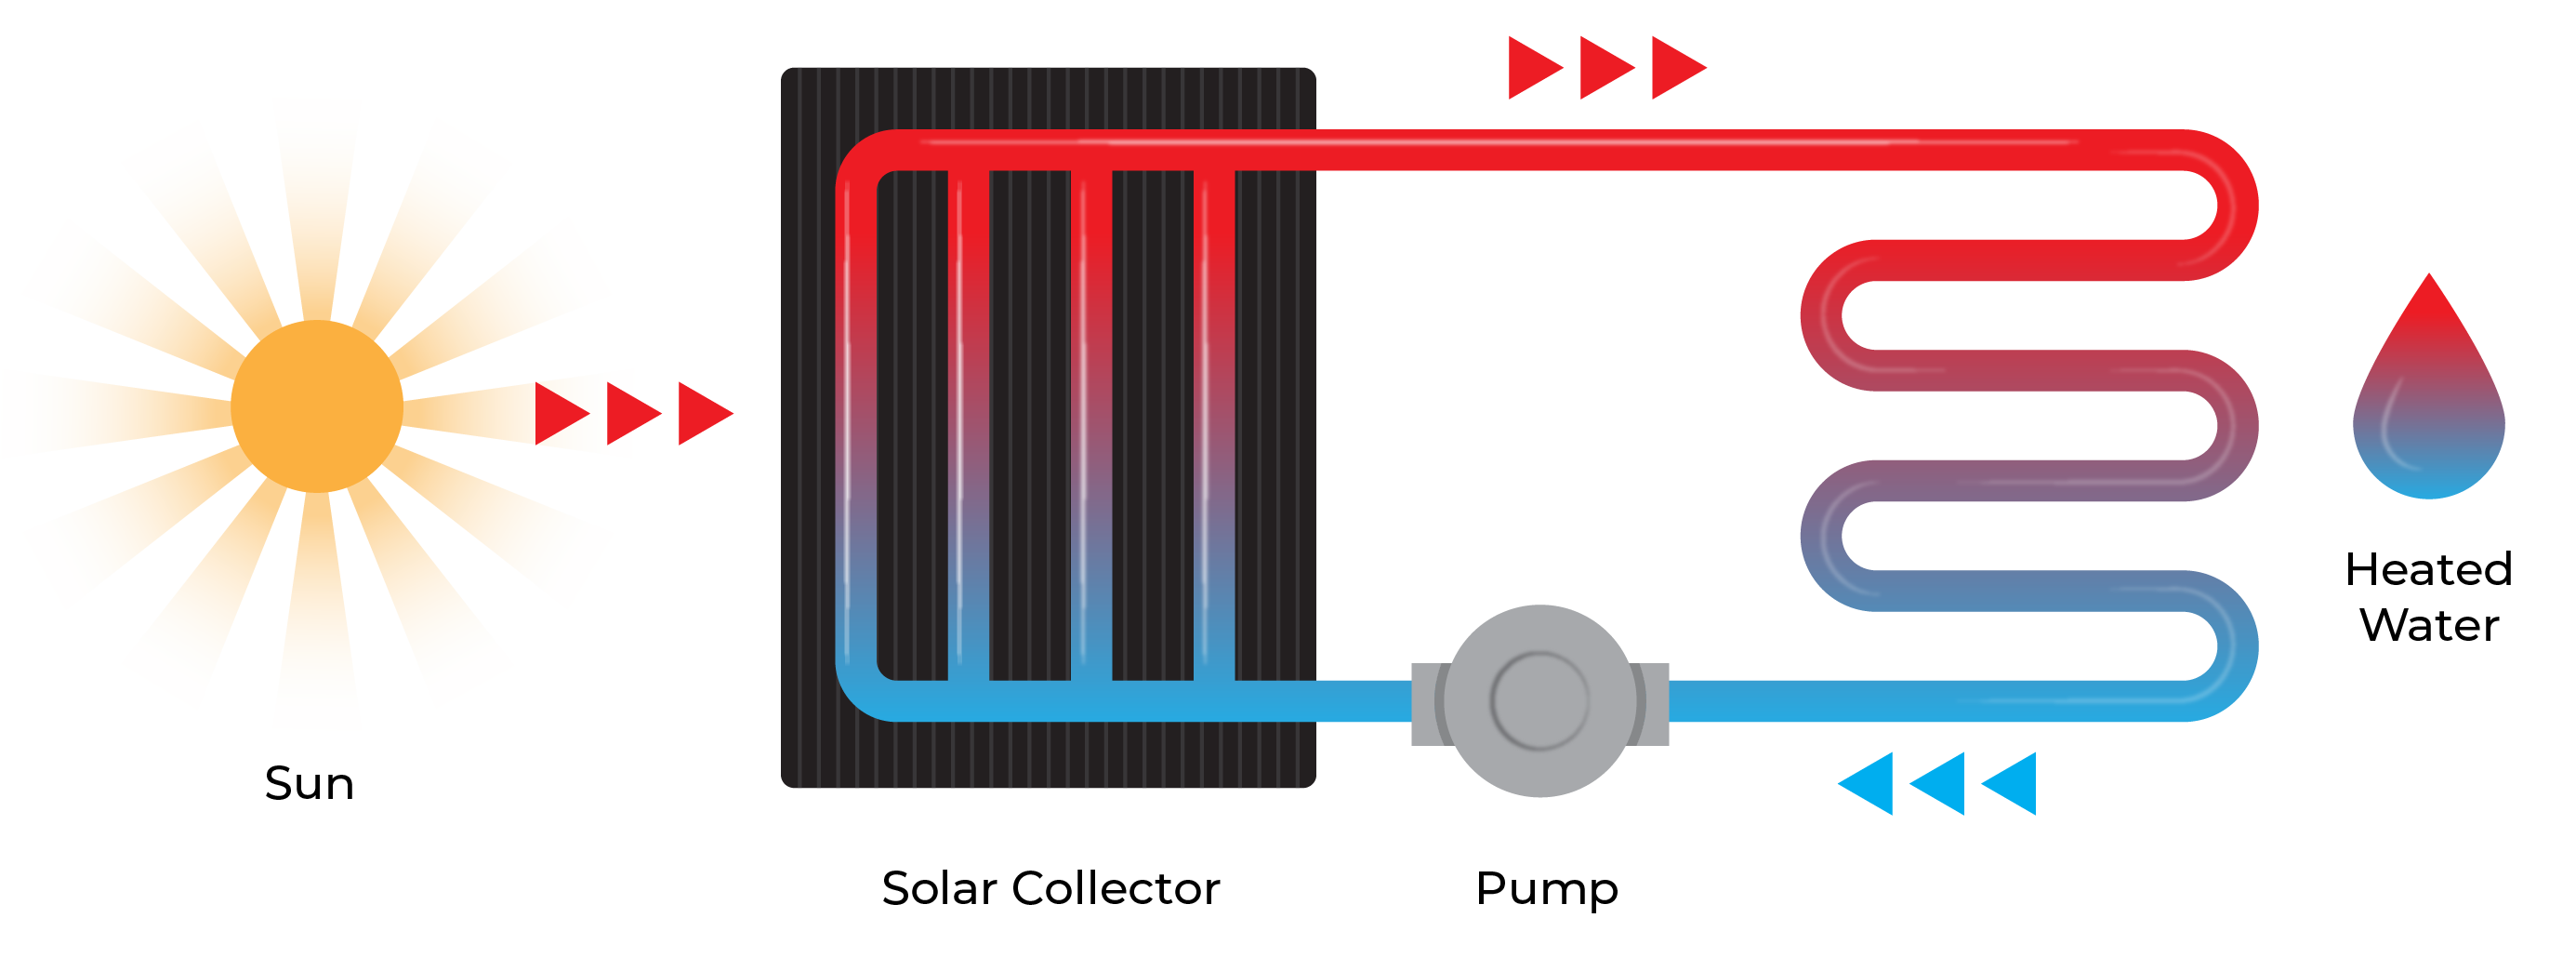 EE-Solar-Water-Heating-Simplified-Diagram